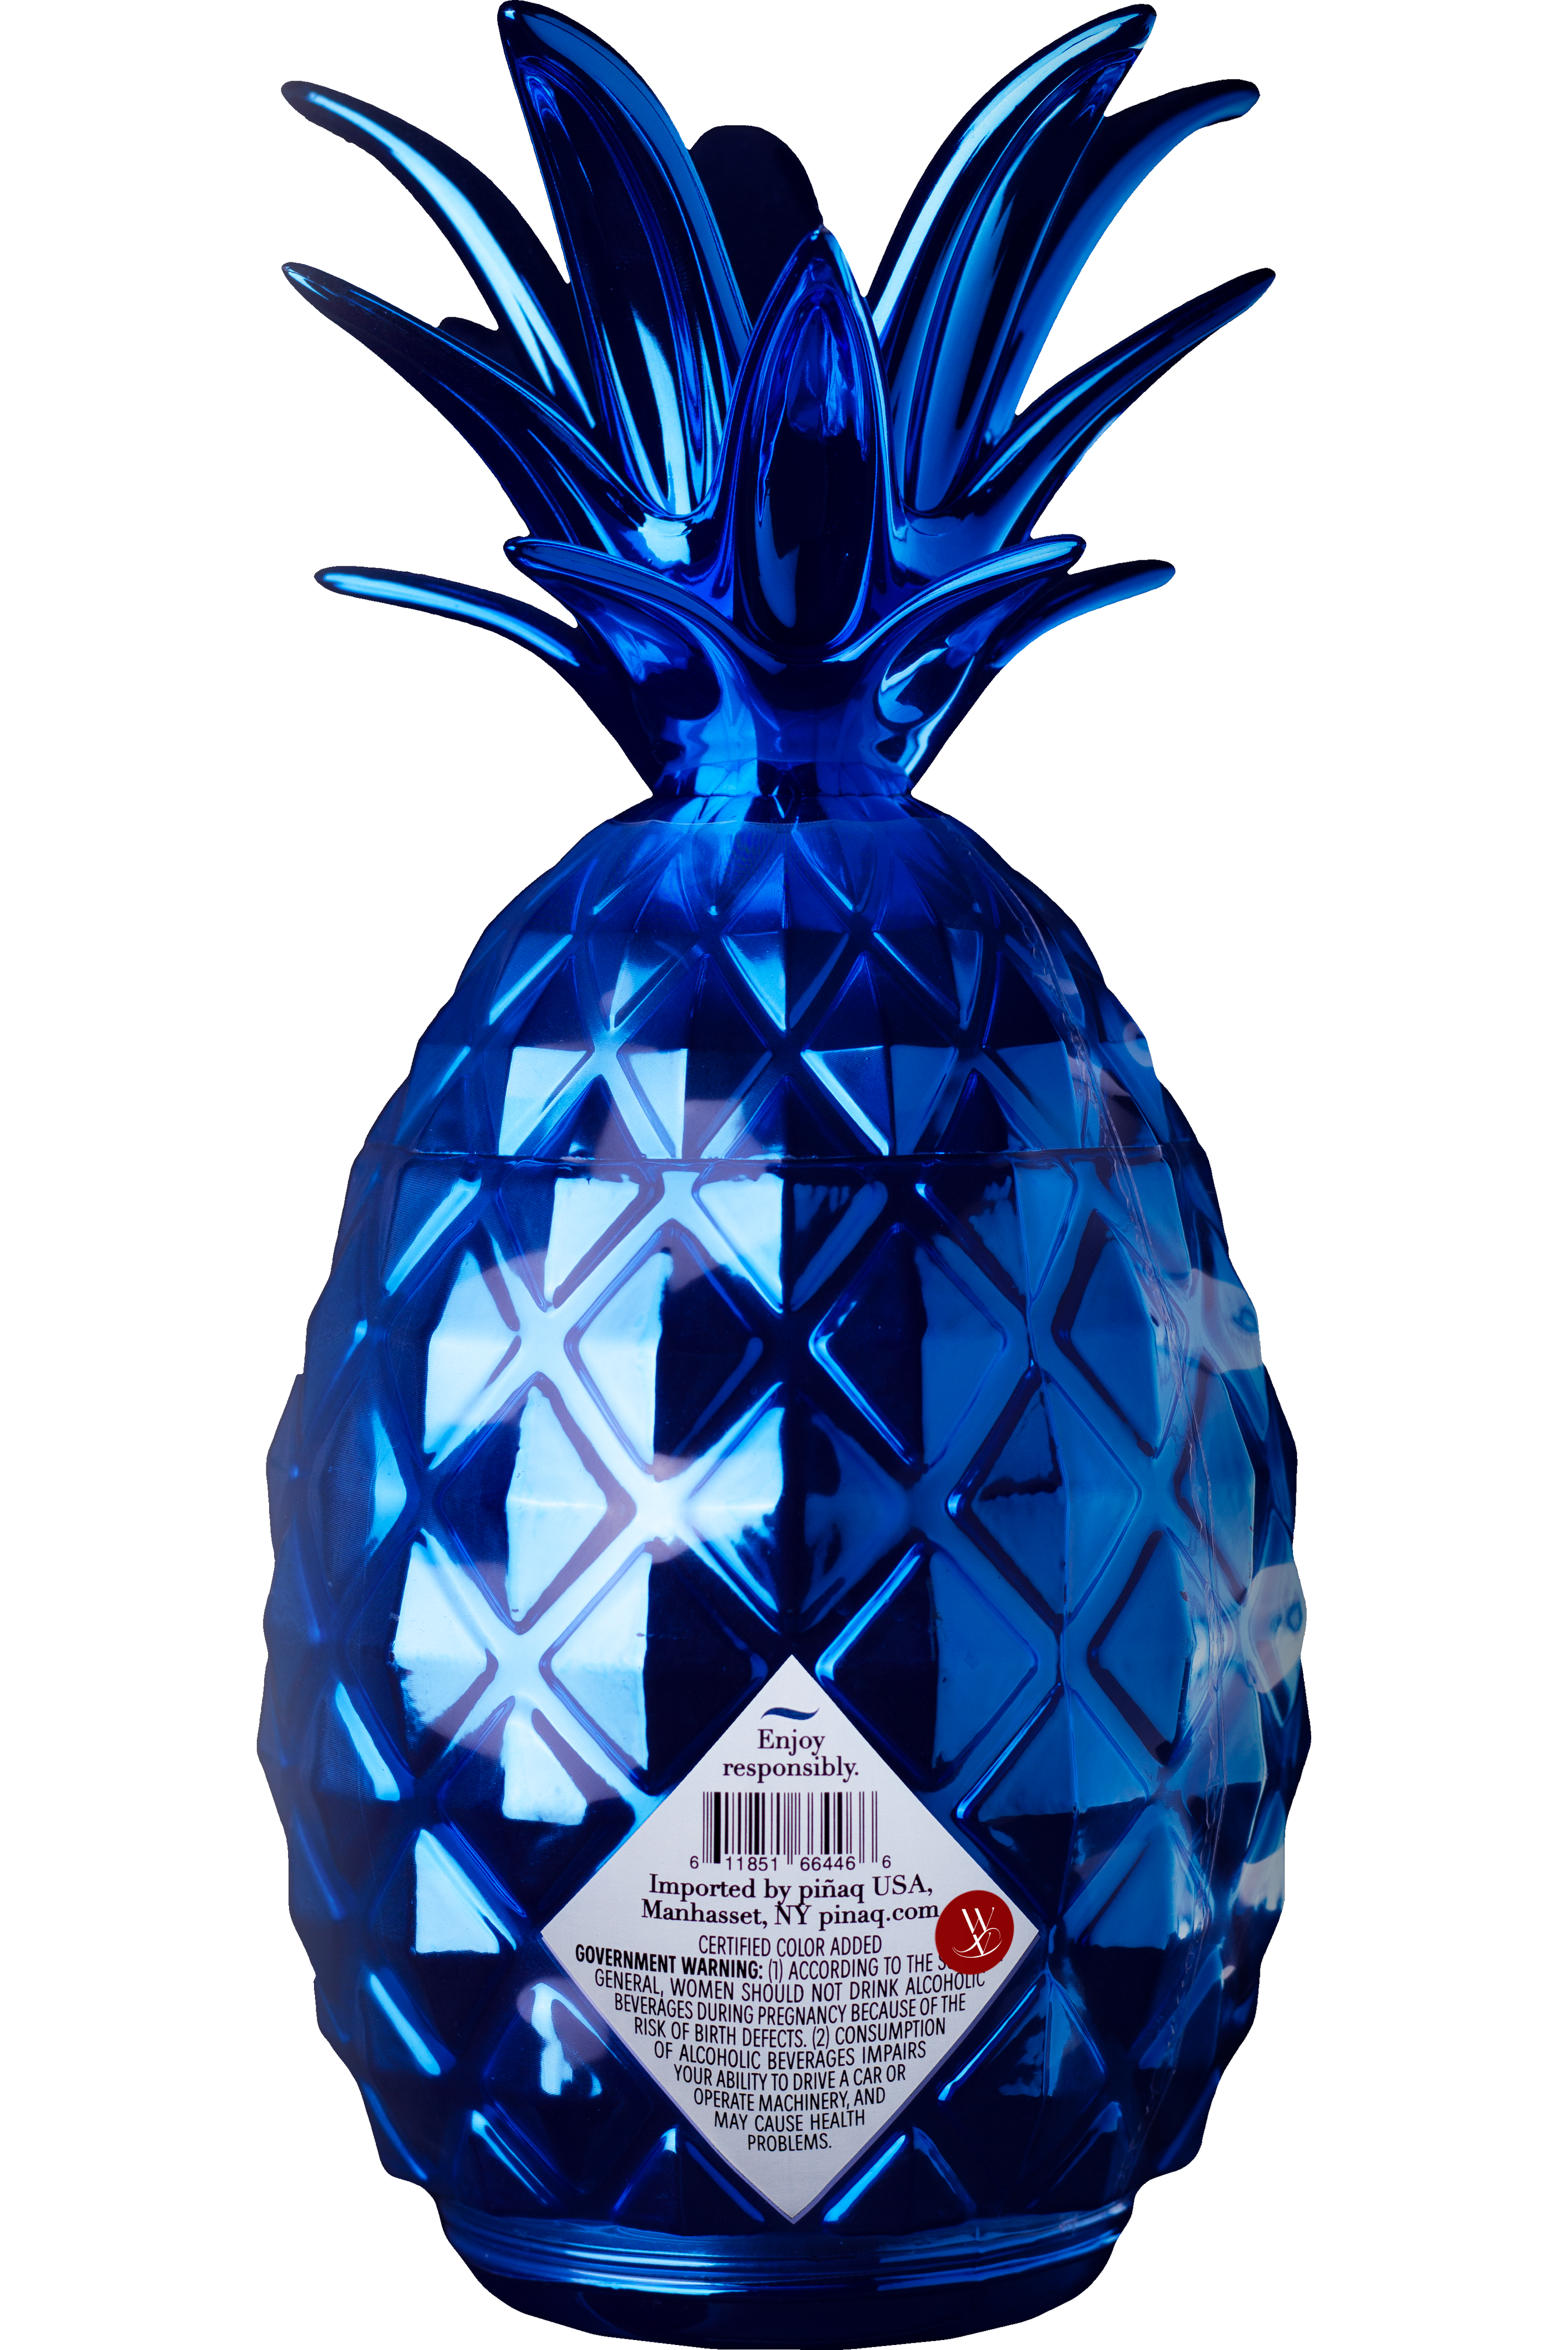 WineVins Piñaq Tropical Blue